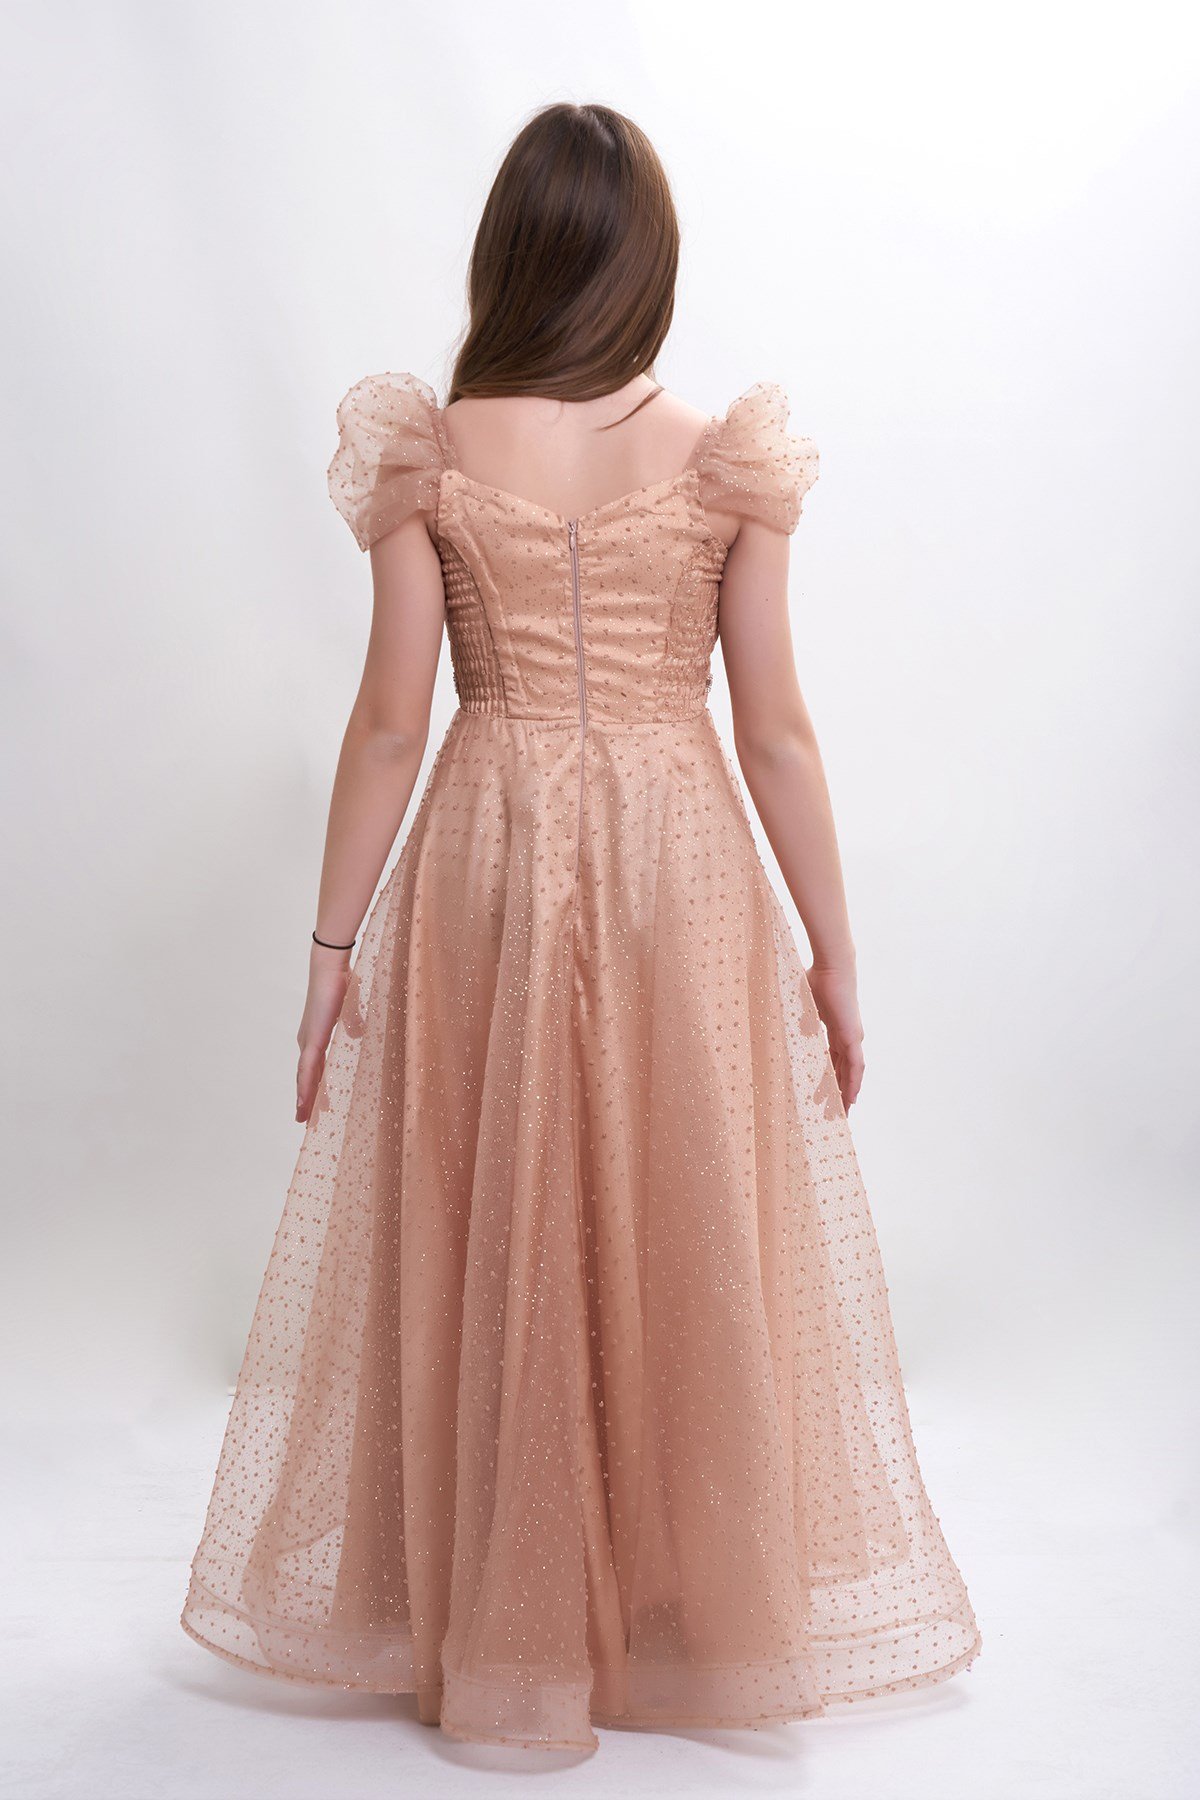 Yeni Tasarım Kız Çocuk/Genç Sim ve Tül Detaylı Abiye Elbise Mezuniyet/Düğün  5315 Renk Gold